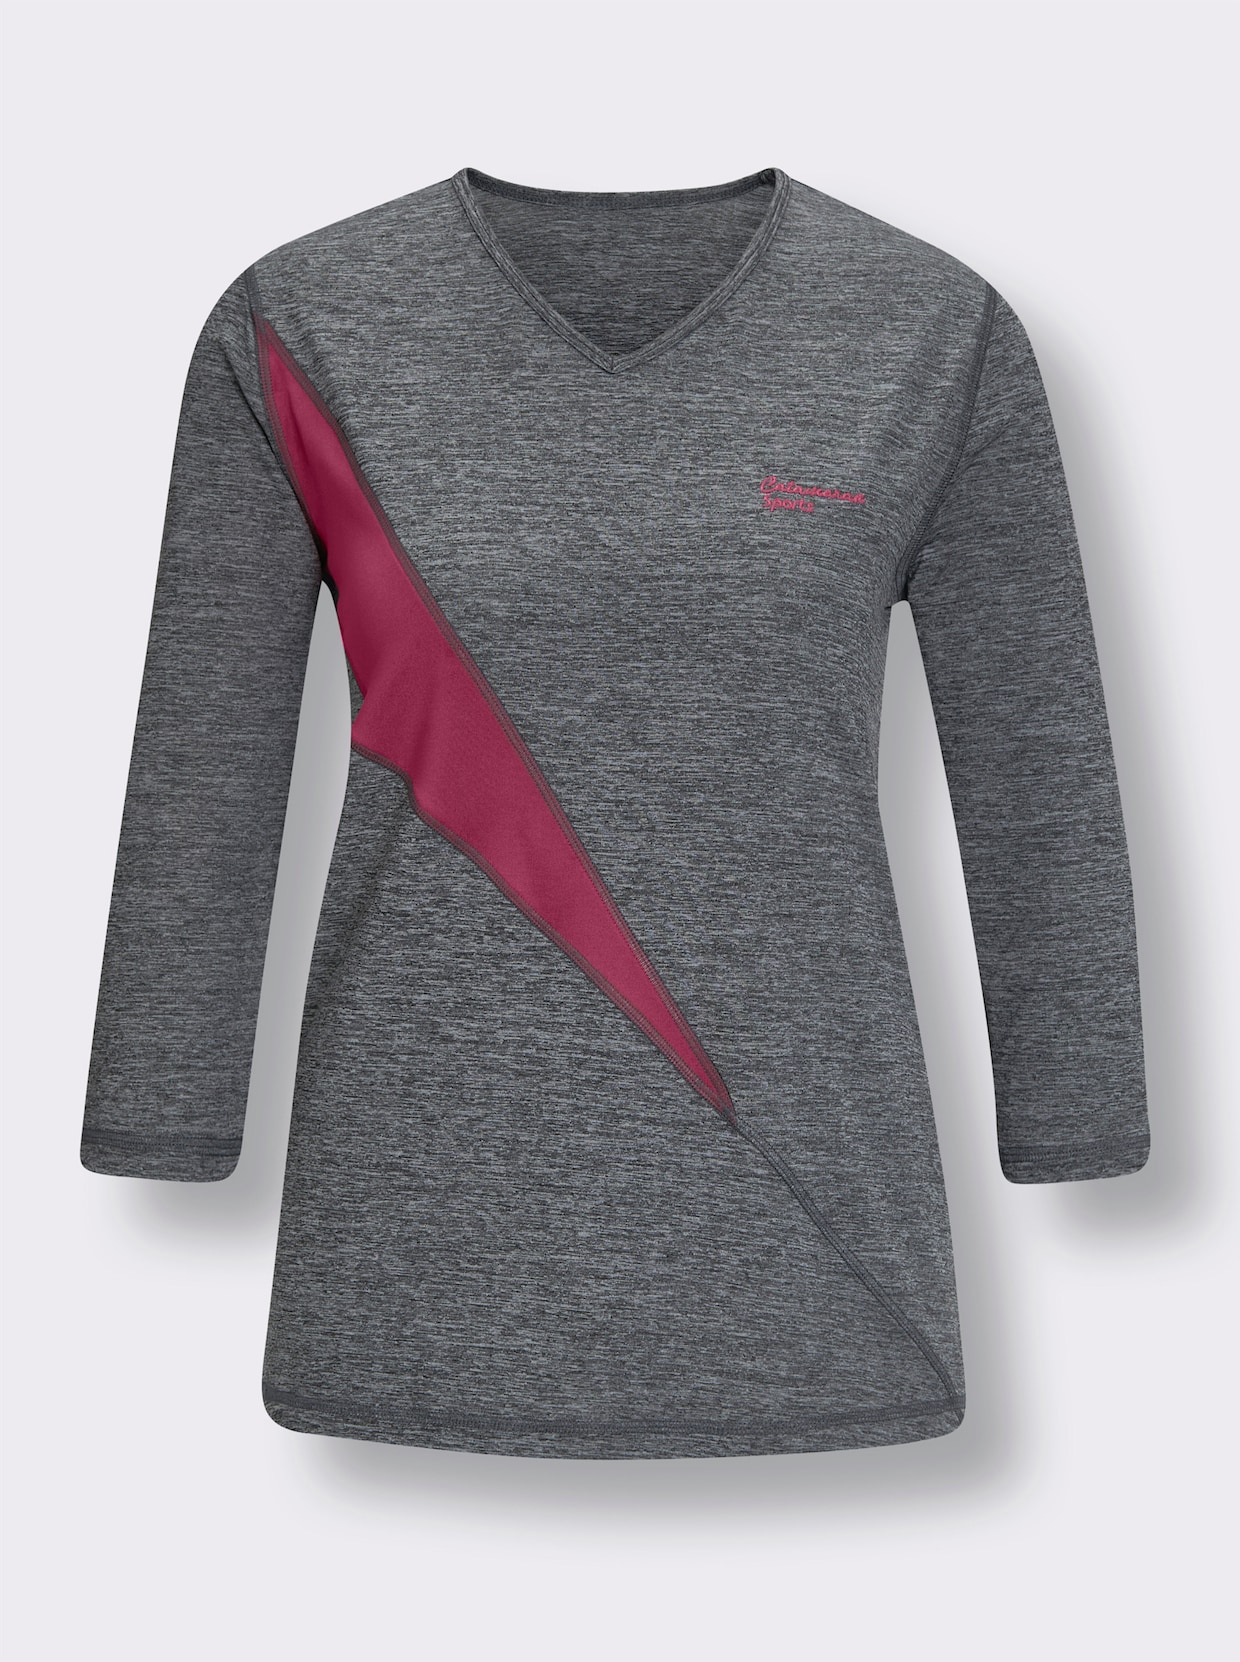 Catamaran Sports Funktions-Shirt - grau-meliert-pink